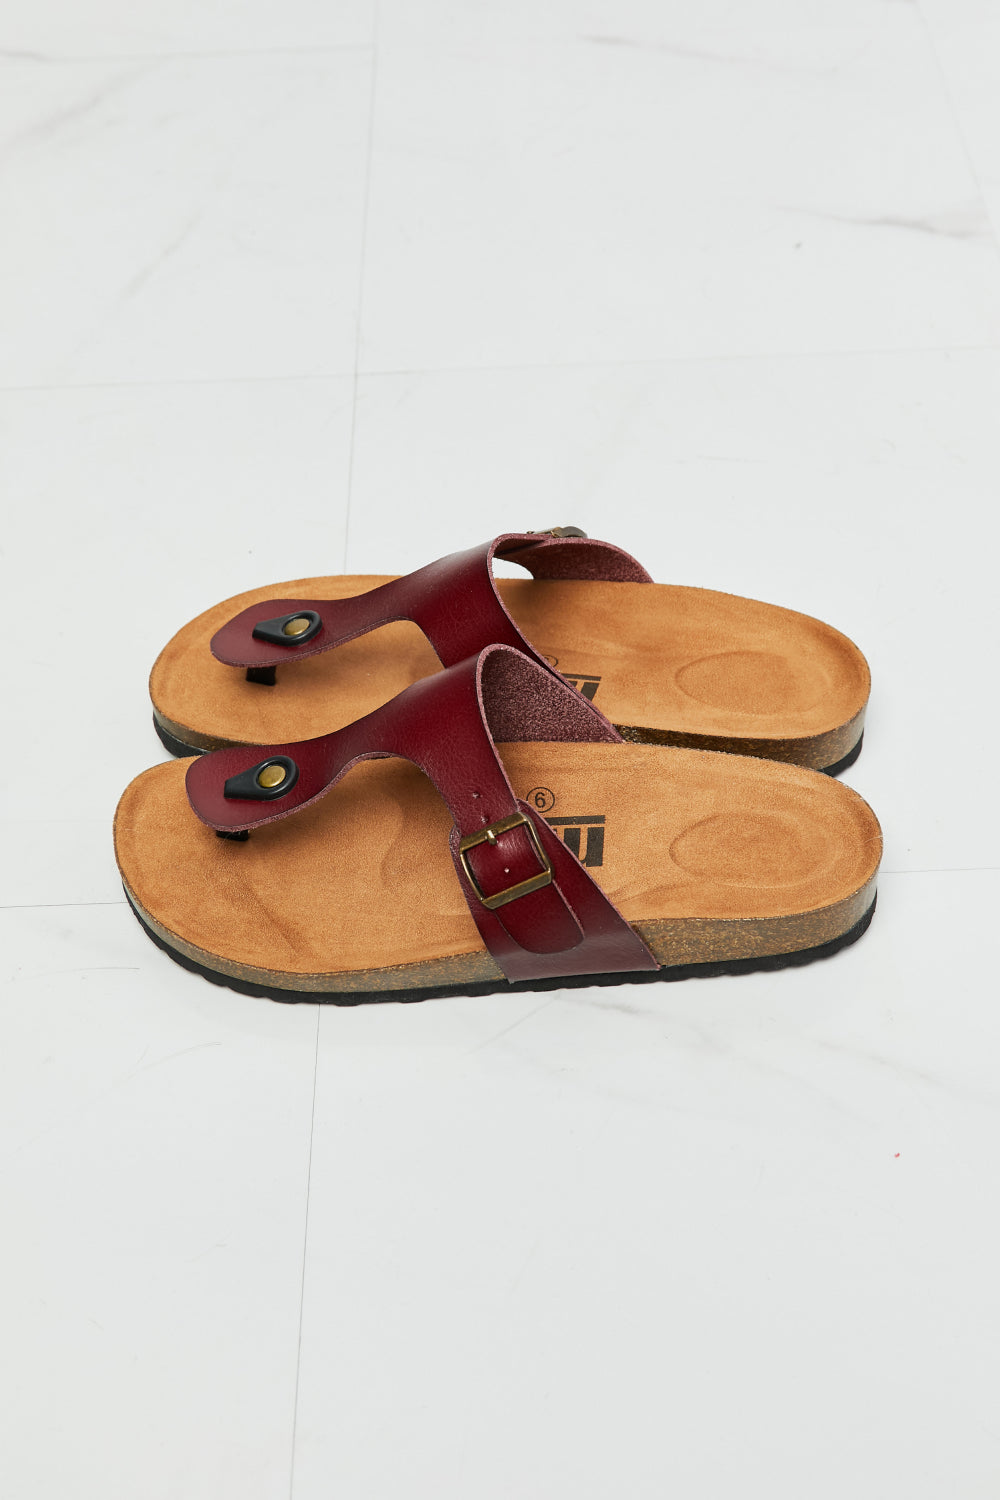 MMShoes T-Strap Flip-Flop Slide On Flat Cork Footbed Comfort